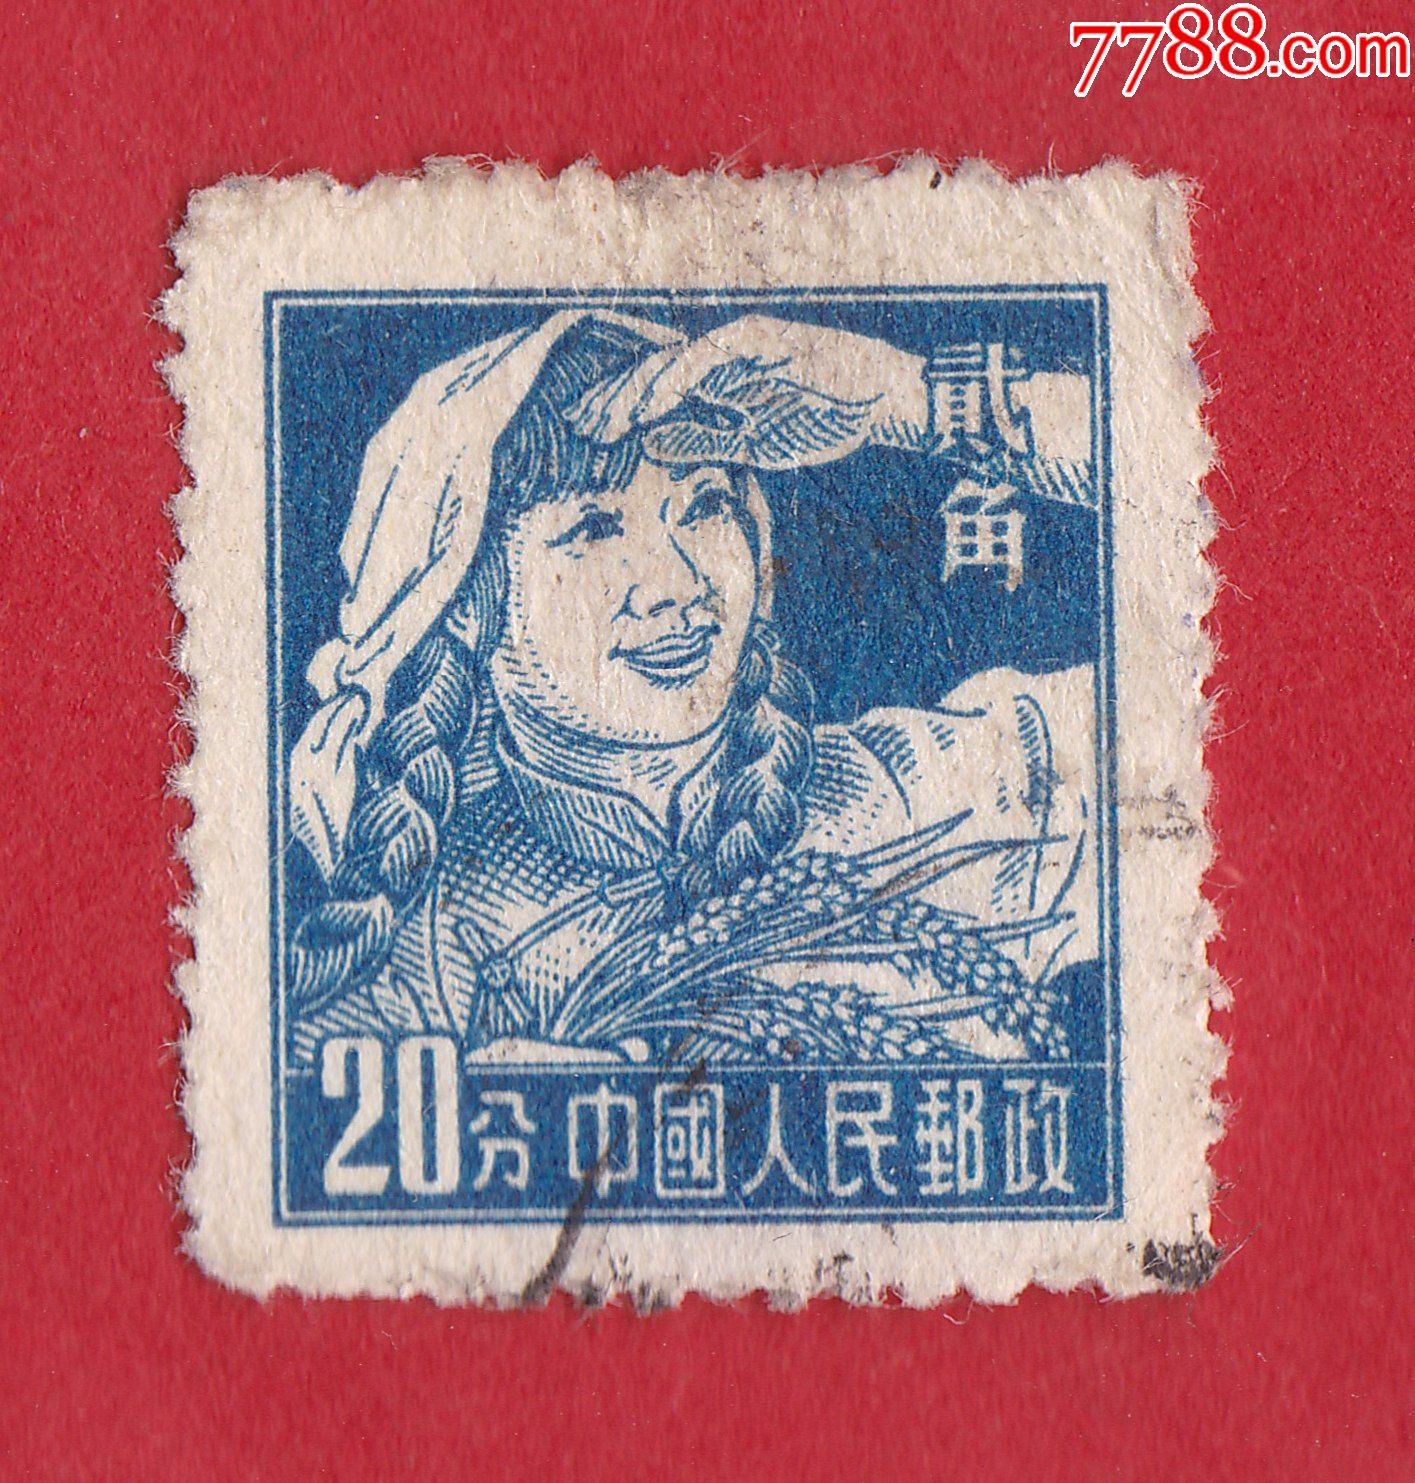 普8工农兵图案普通邮票9820分农妇单枚信销邮票